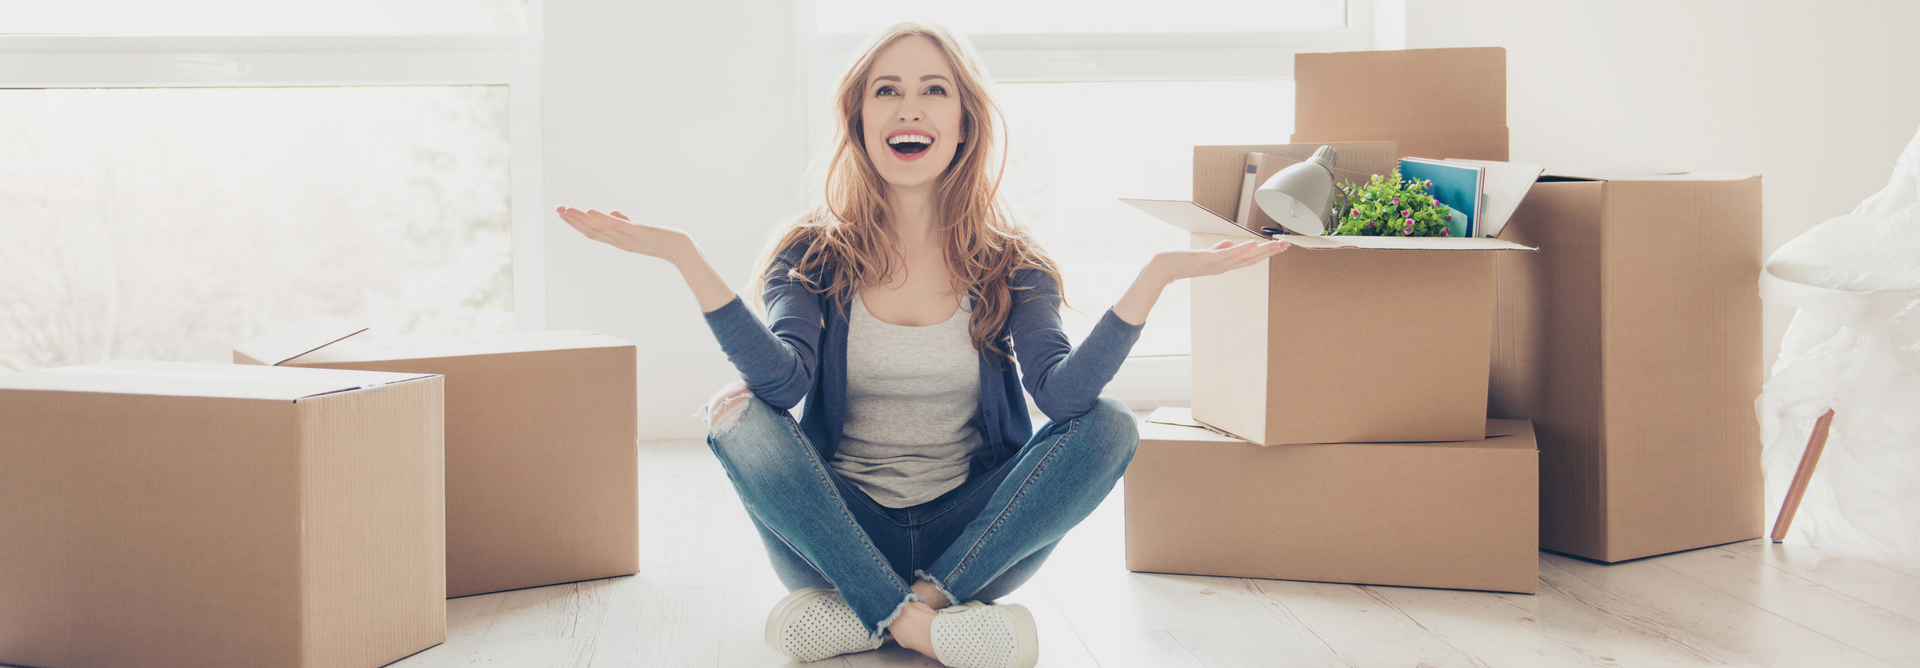 Как осуществить квартирный переезд с наименьшими затратами